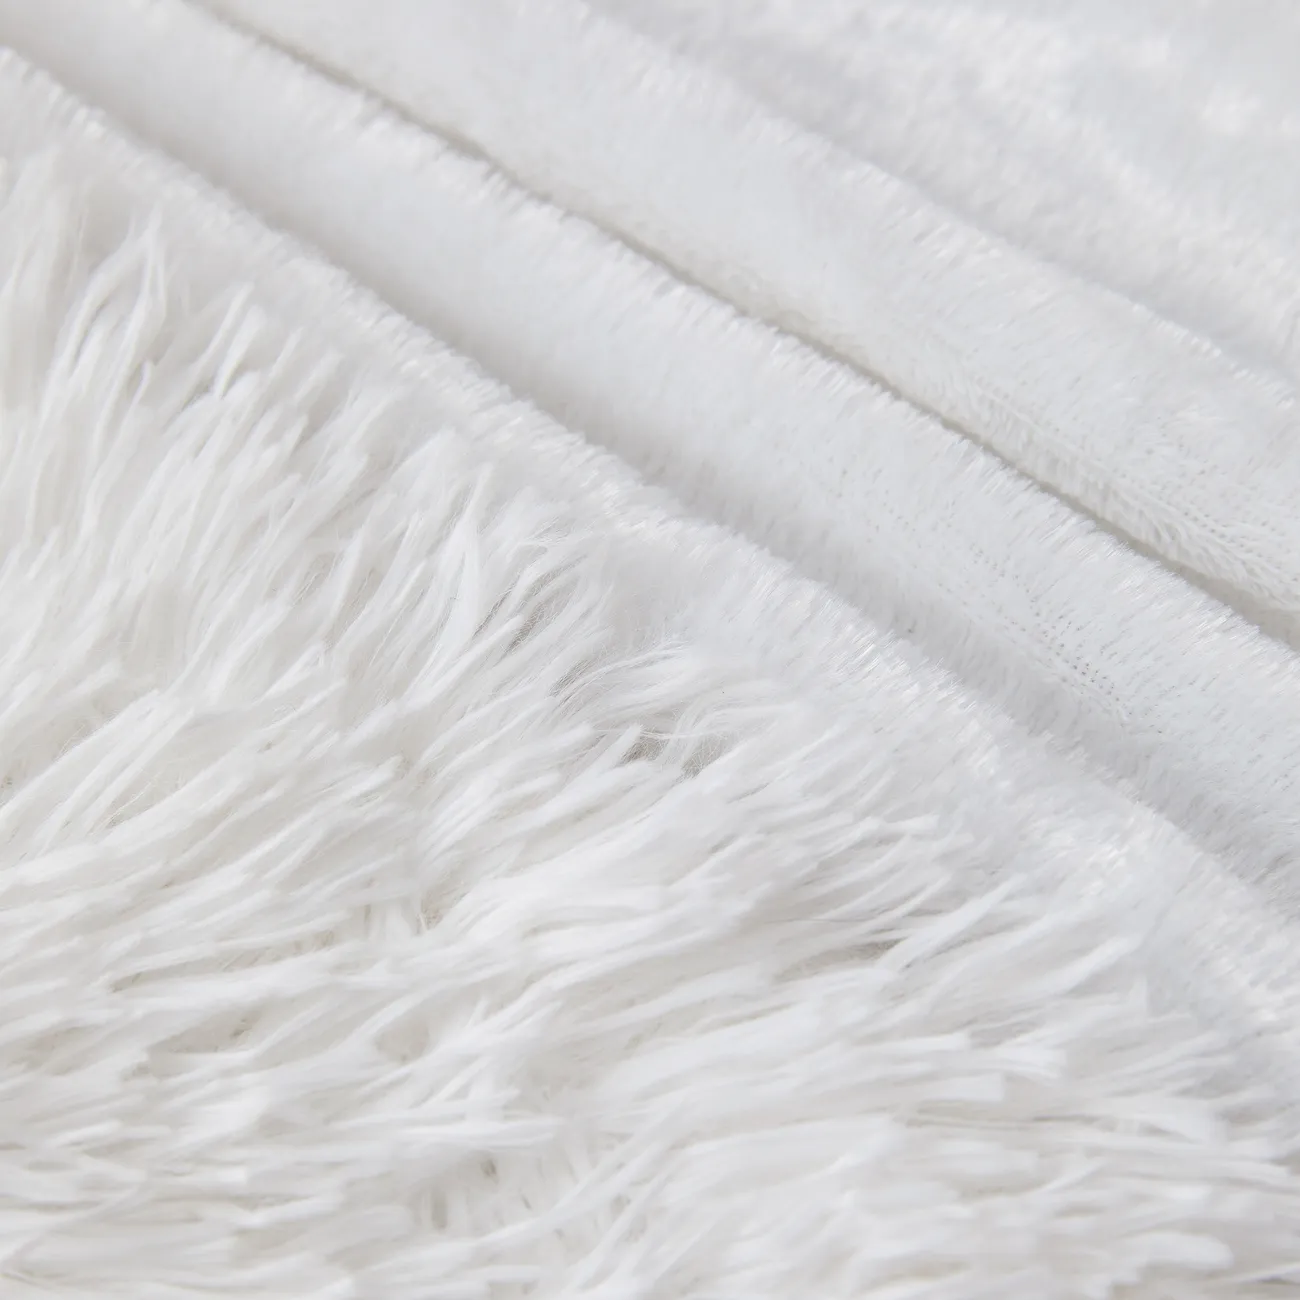 Manta PV PV Branca Premium - Ultramacia, Durável, Lavável na Máquina - Perfeita para o conforto doméstico e decoração elegante Branco big image 1